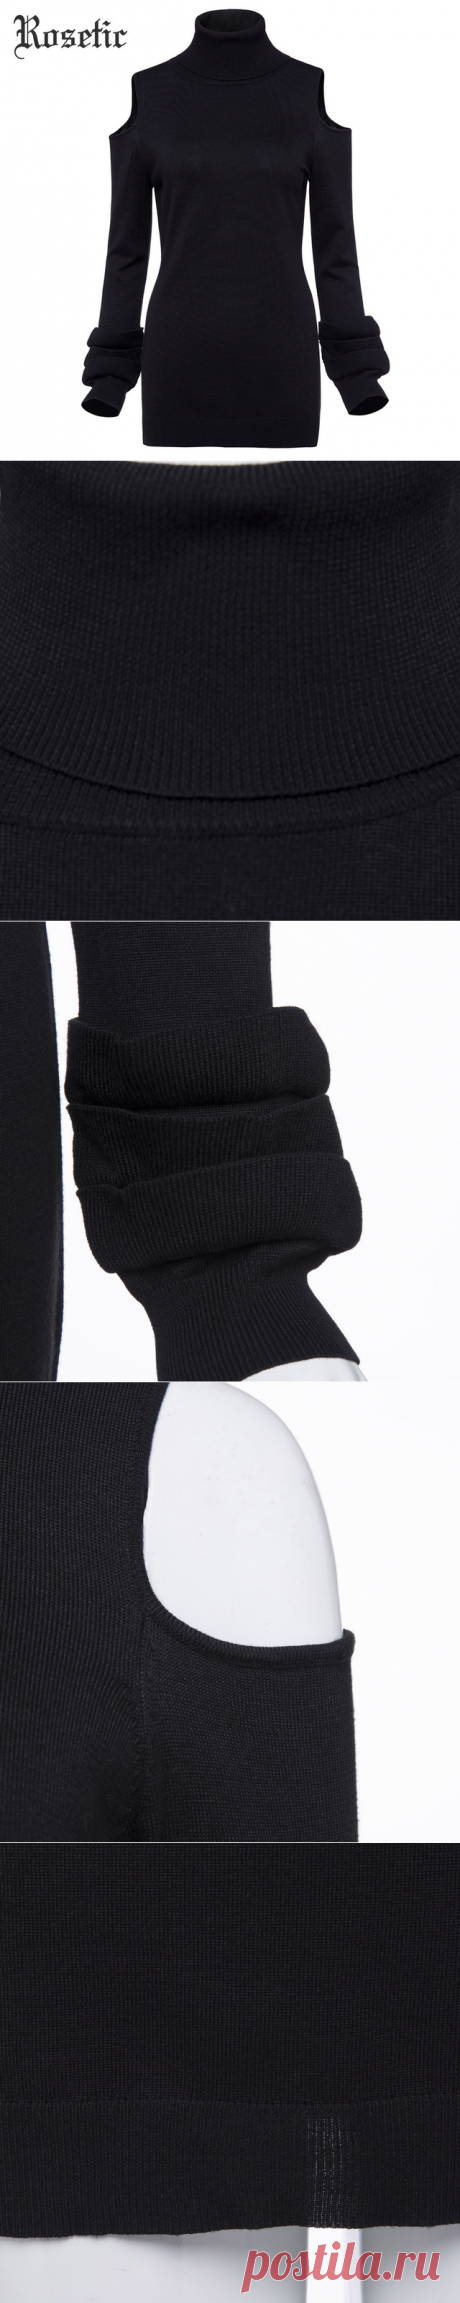 Rosetic свитер для повседневной носки черный осень тонкий Вязание Для женщин выдалбливают водолазка Модные Топы Верхняя одежда Ретро готический свитер для повседневной носки купить на AliExpress